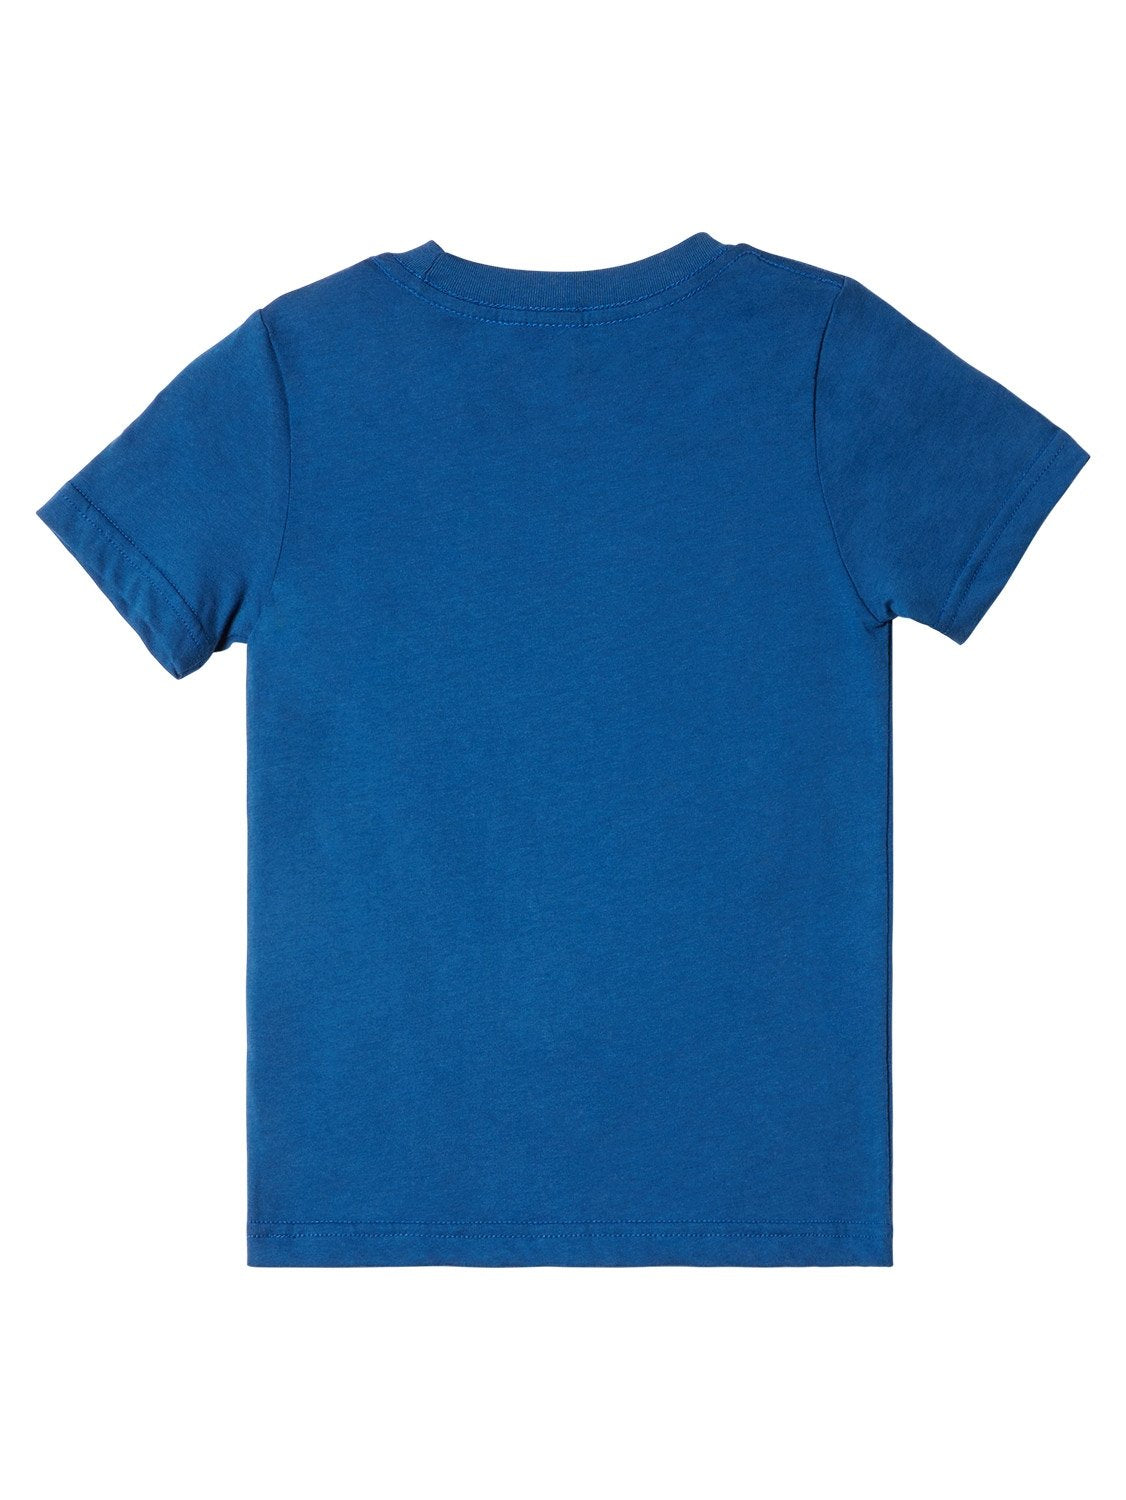 Quiksilver Pre-Boys All Terrain T-Shirt